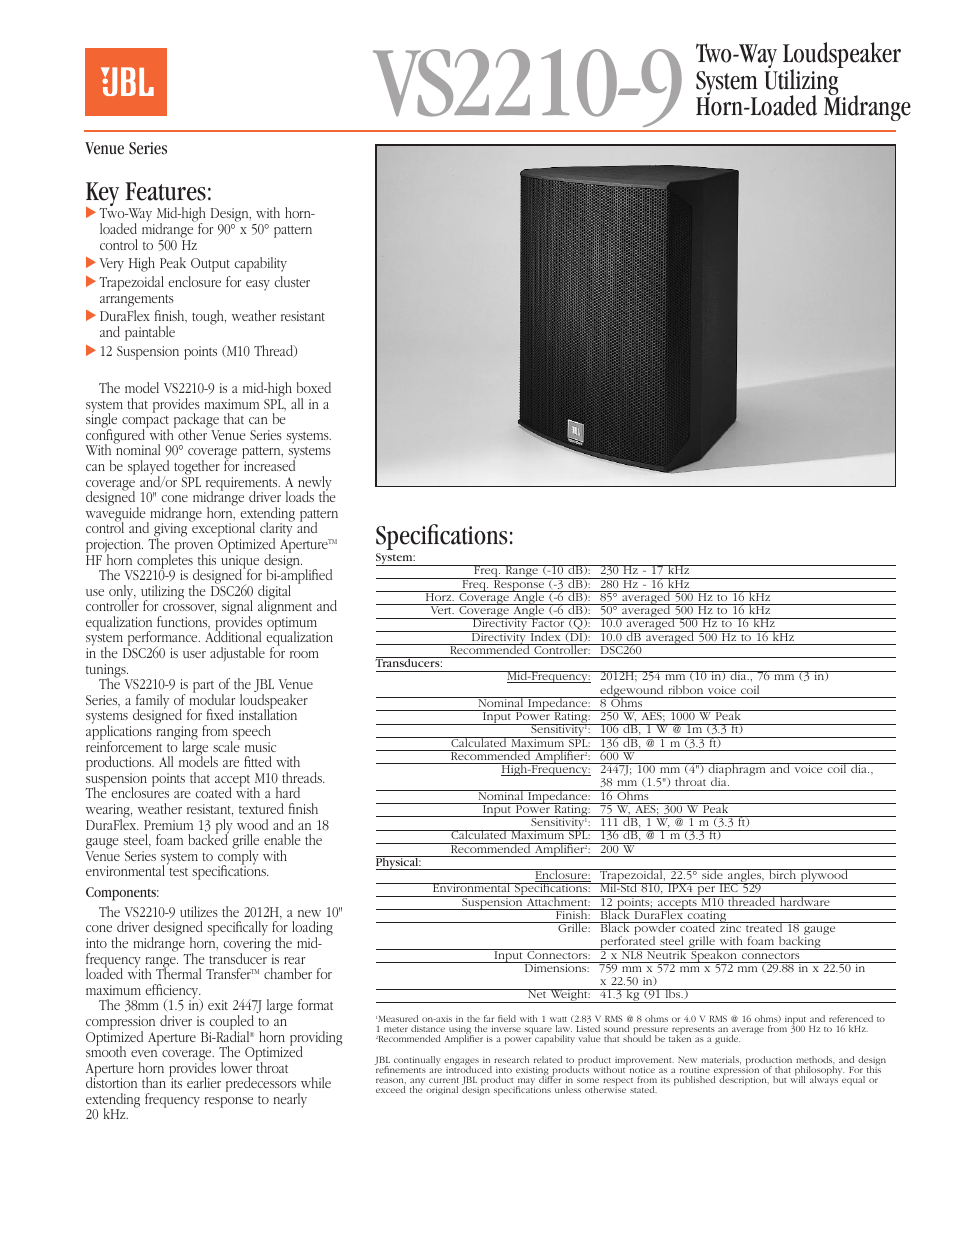 Two-Way Loudspeaker System Utilizing Horn-Loaded Midrange VS2210-9 (Page 1)